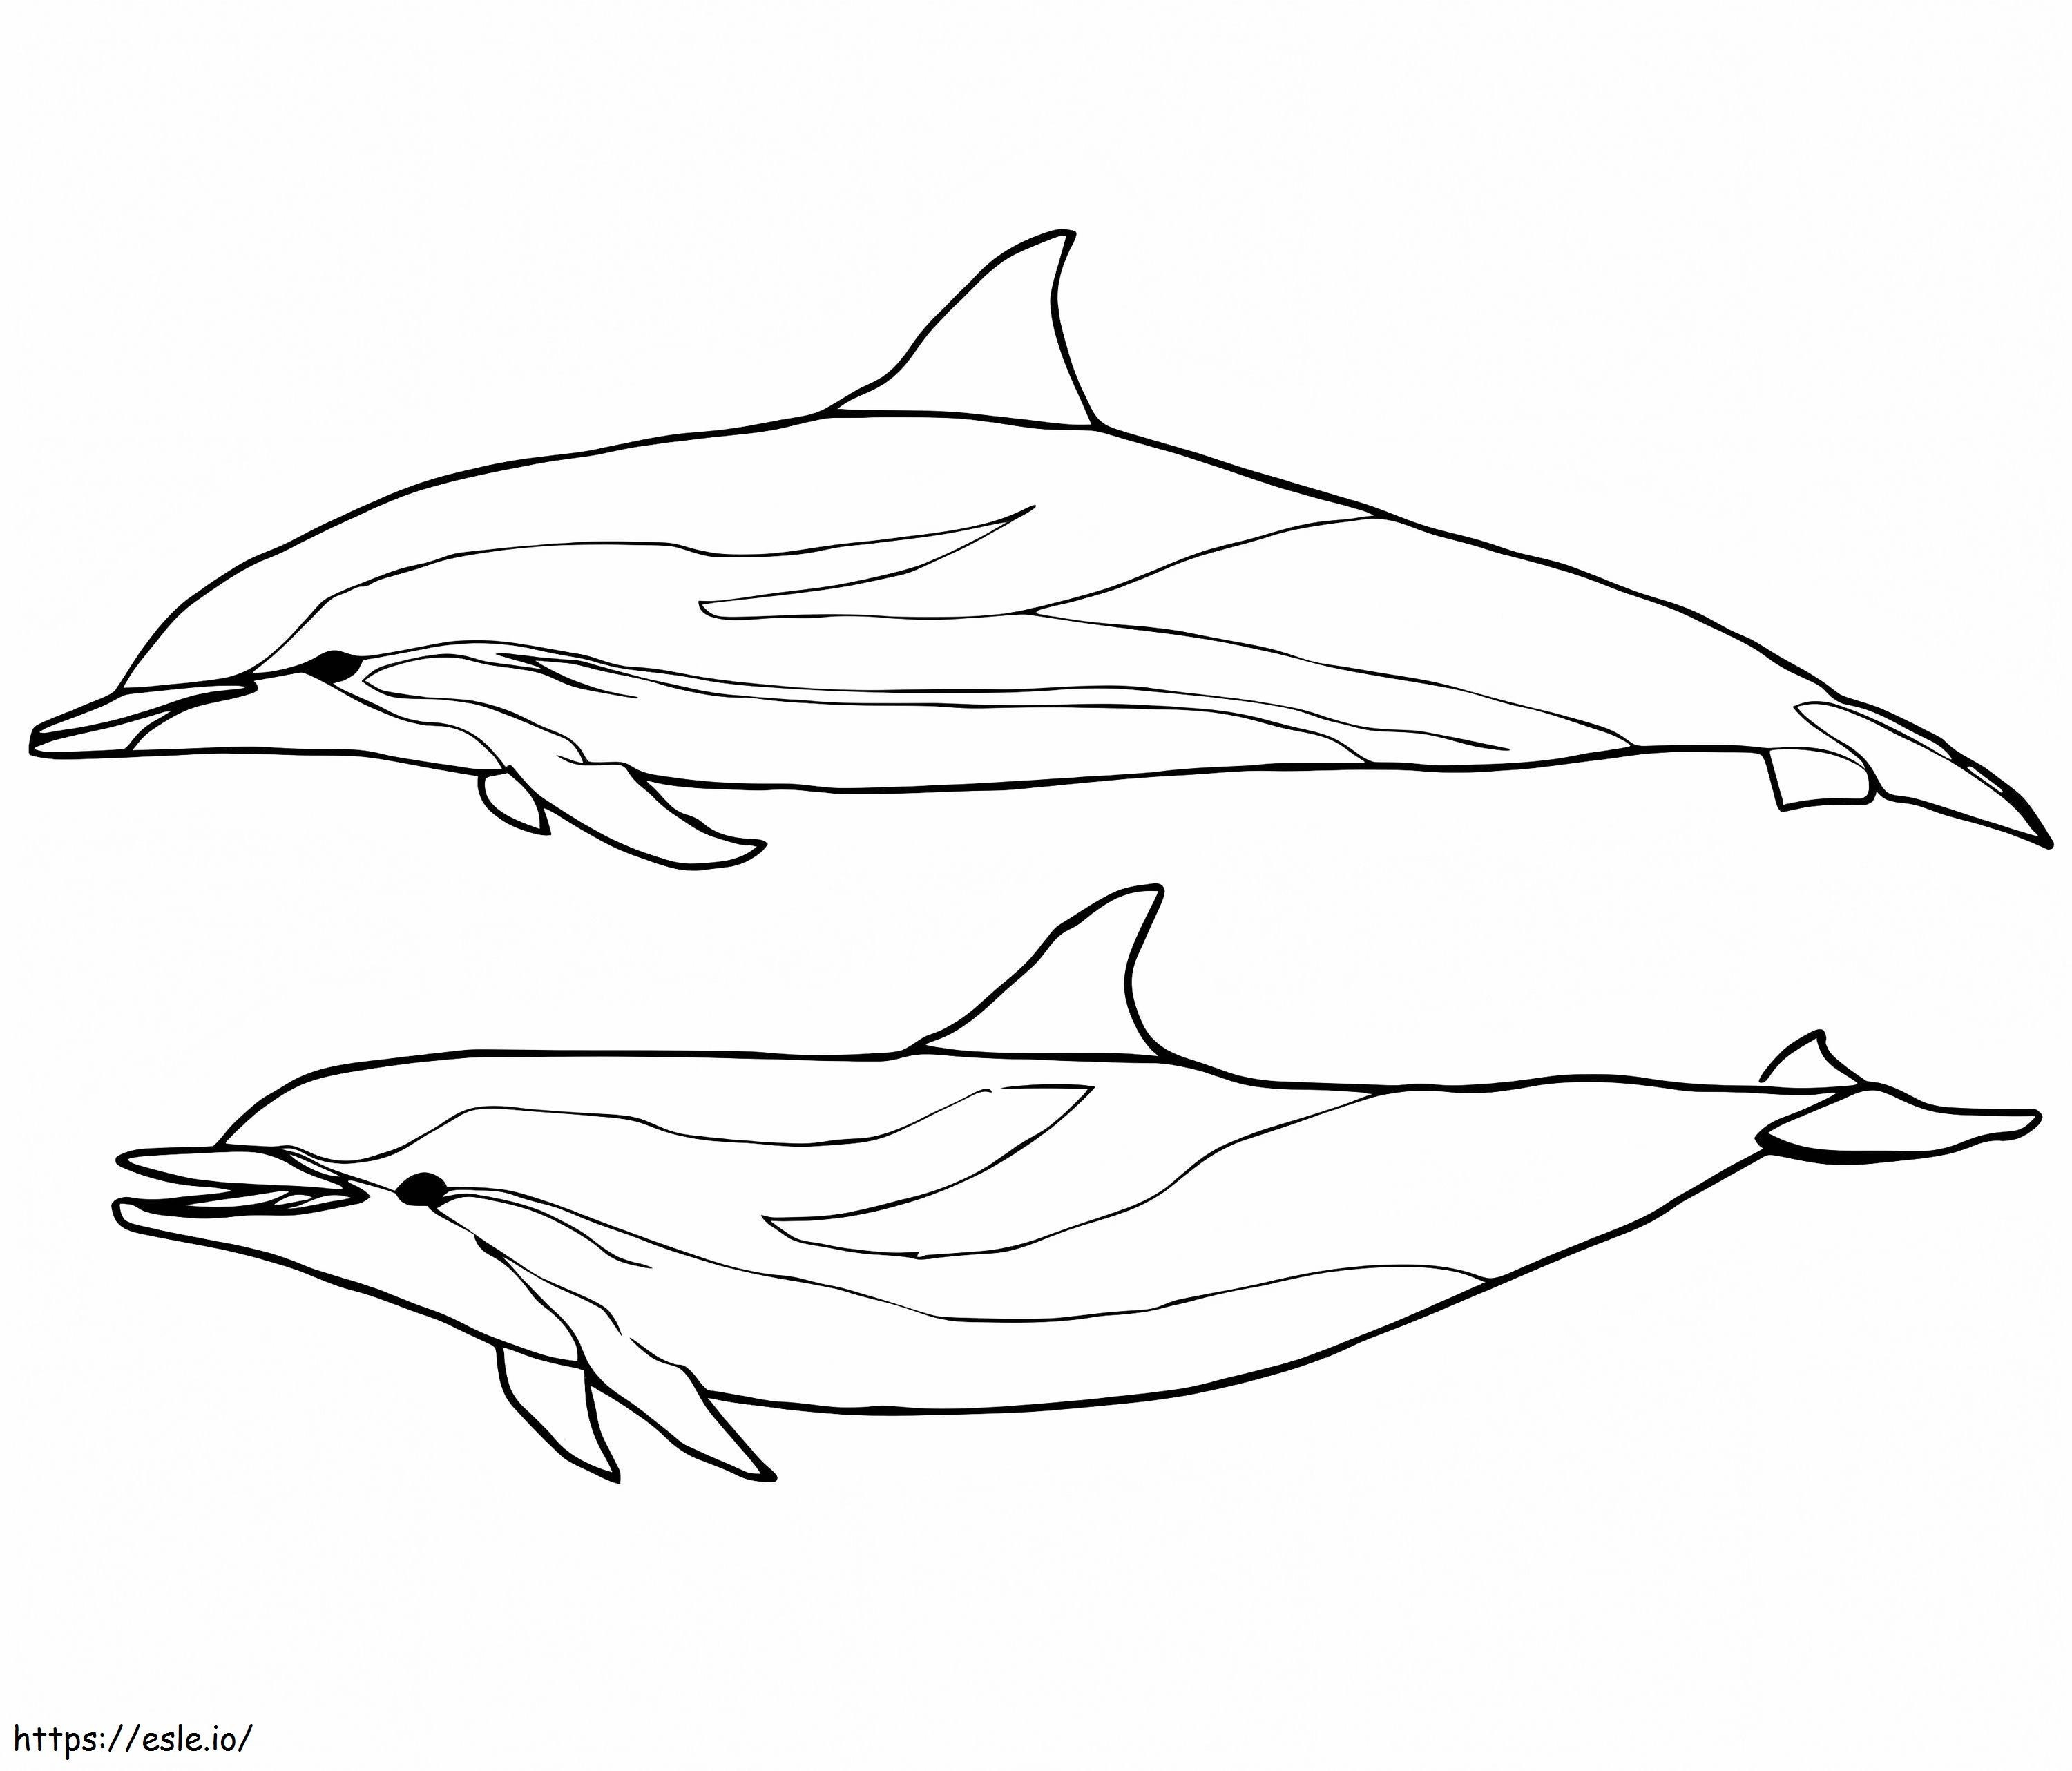 Zwei blaue und weiße Delfine ausmalbilder